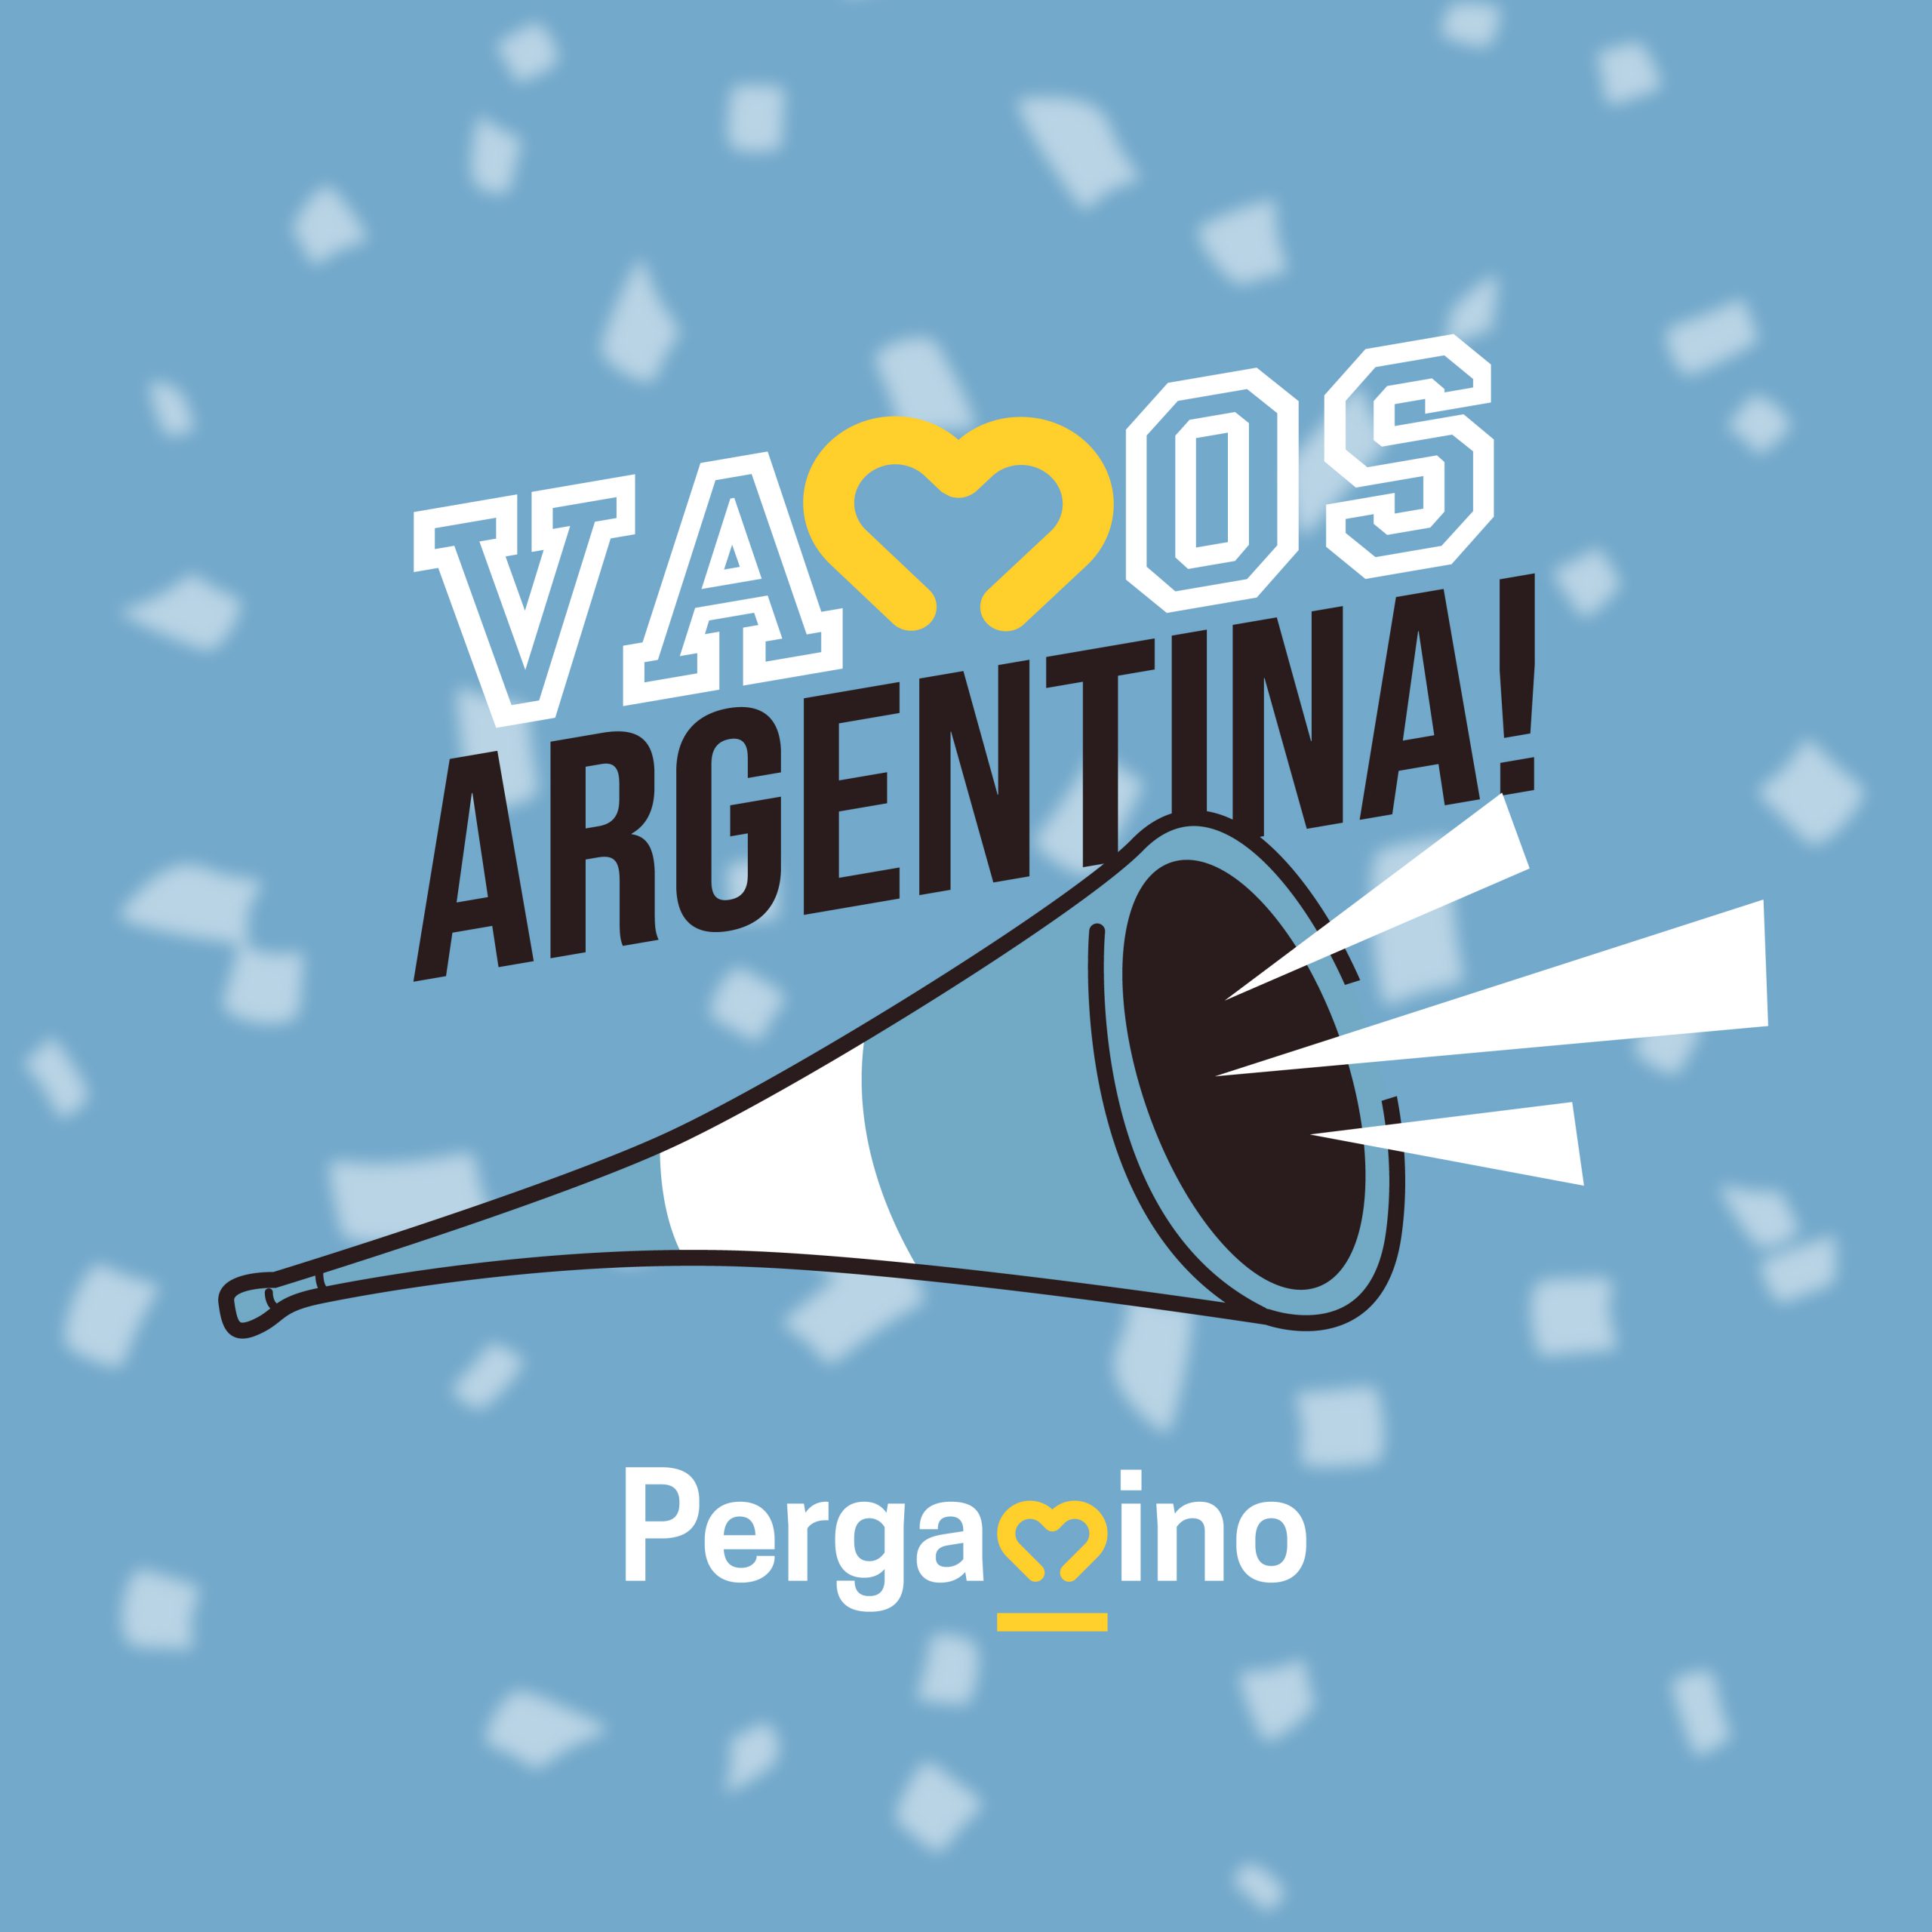 perfil pergamino argentina mundial